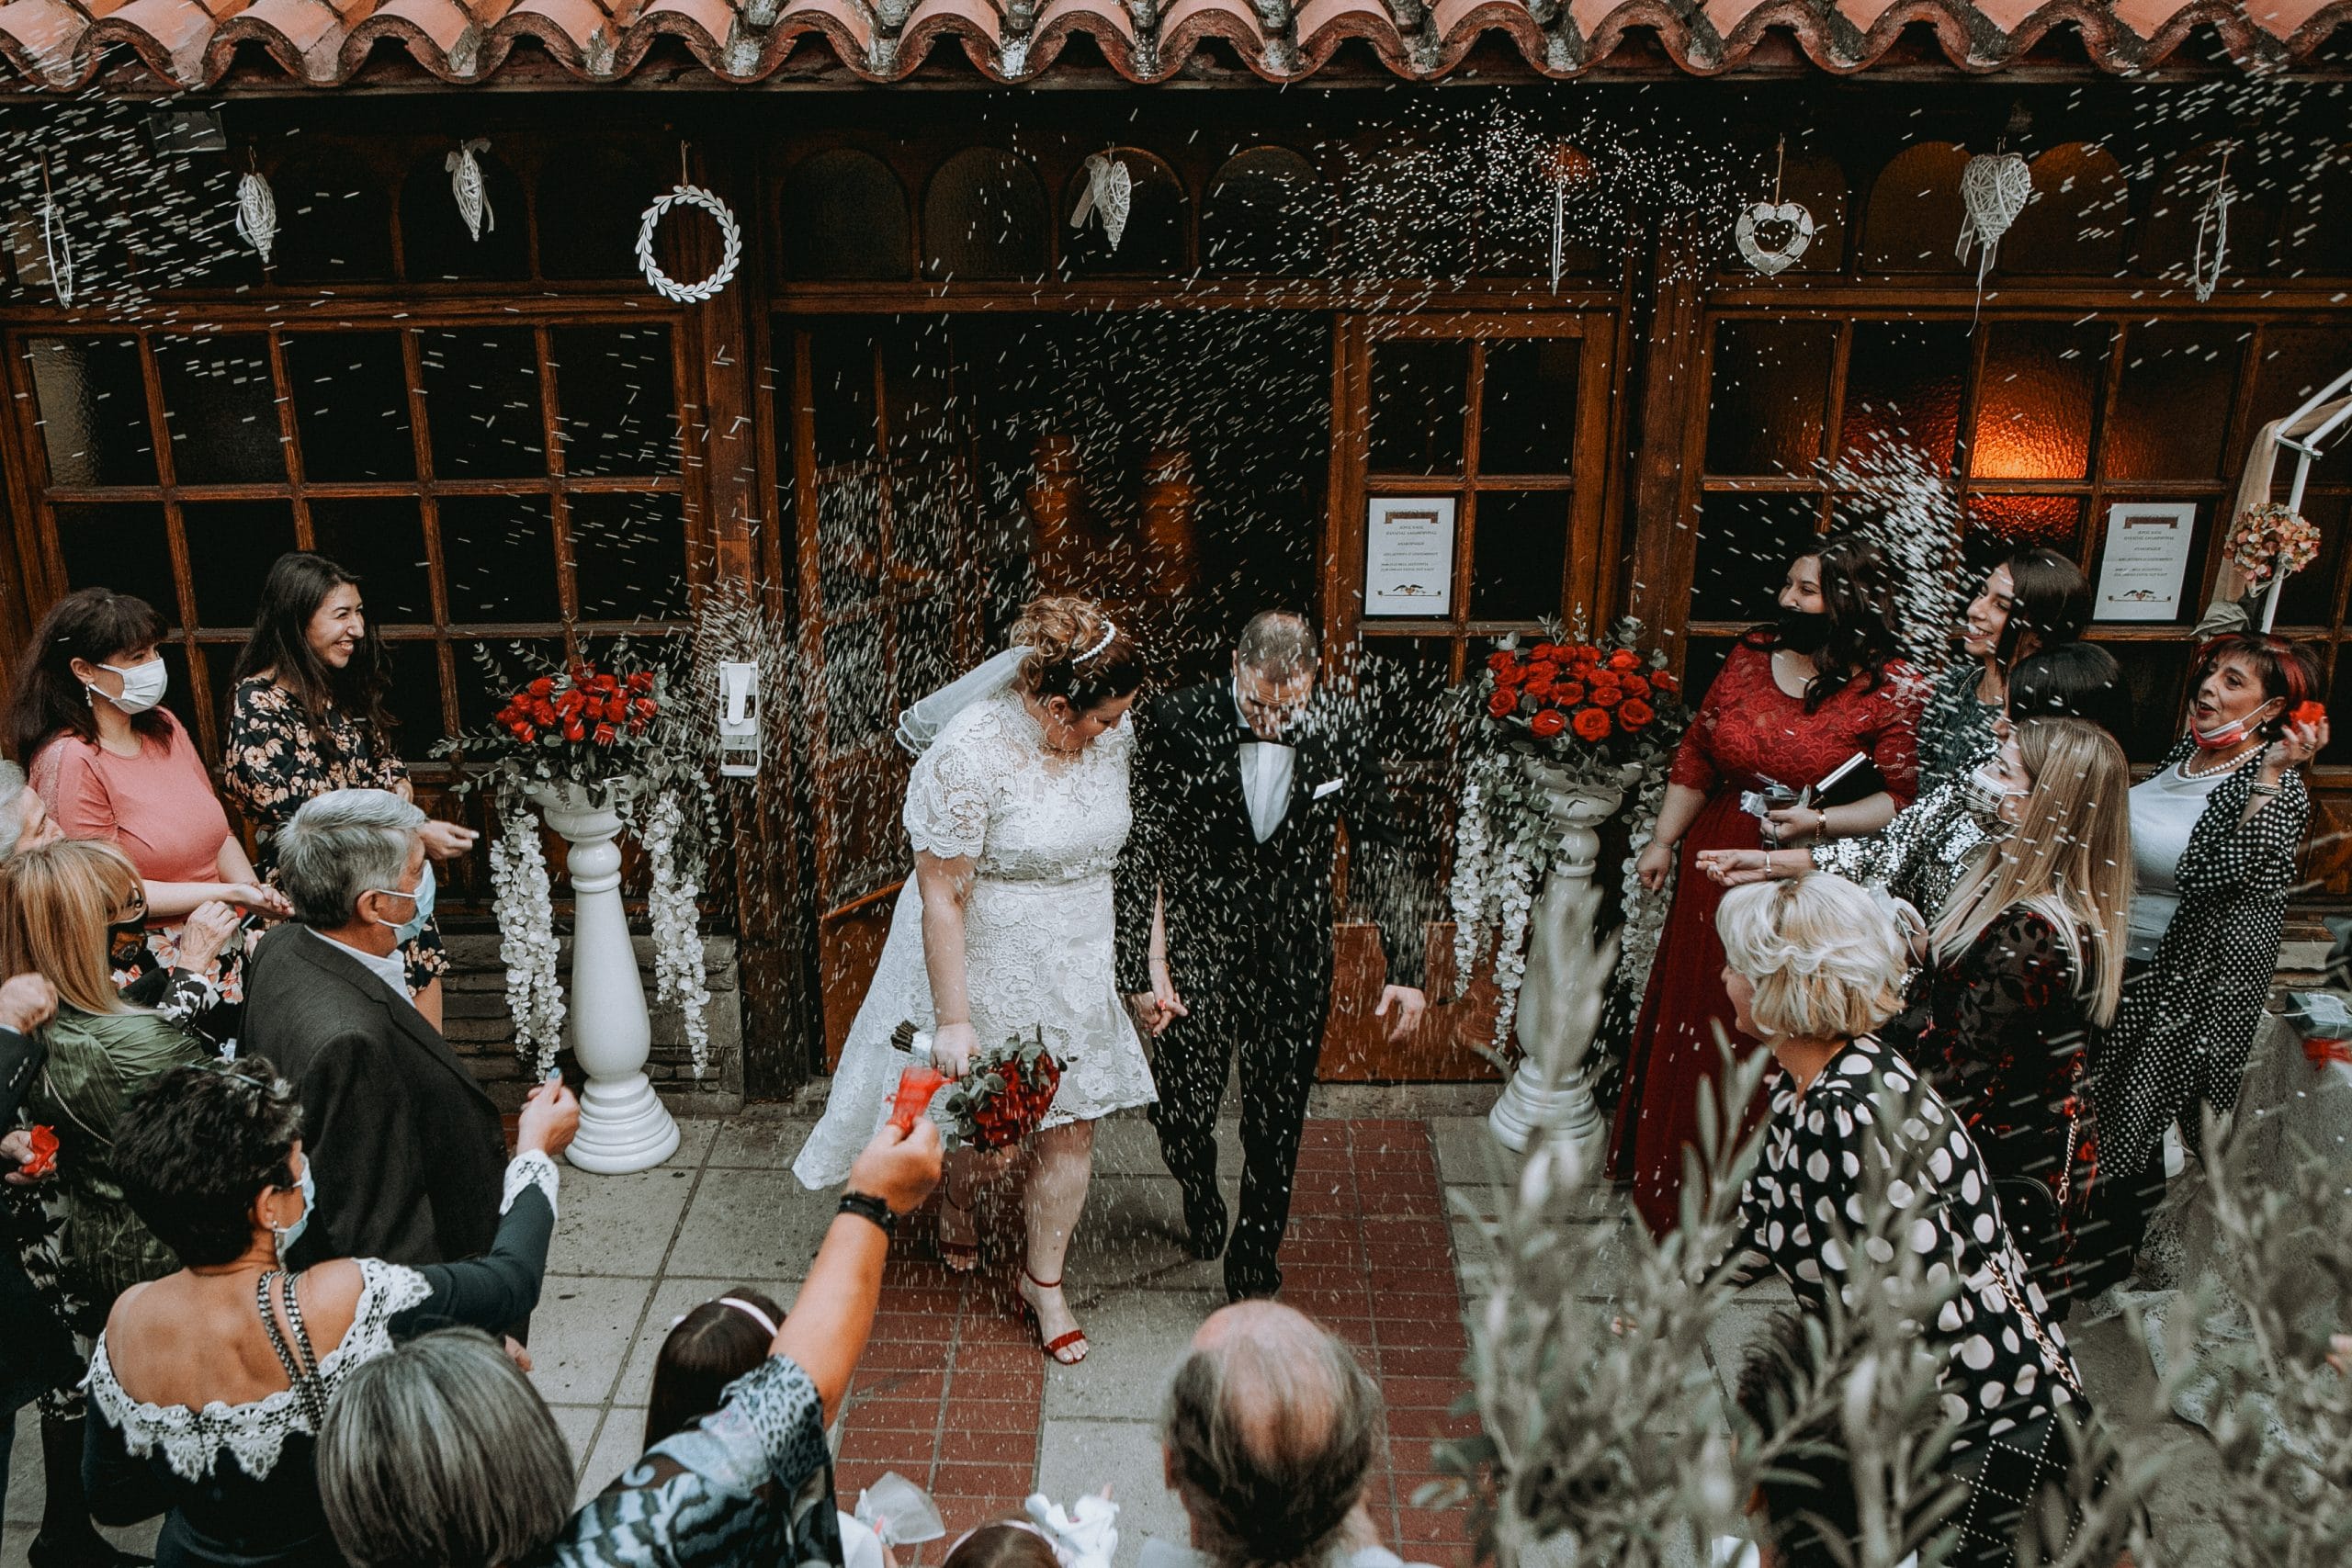 Φωτογραφία κατα την φωτογράφιση γάμου στην Θεσσαλονίκη, το ζευγάρι βγαίνει απο την εκκλησία και οι καλεσμένοι ρίχνουν ρύζι . Στην συγκεκριμένη φωτογραφία φαίνεται η χαρά της στιγμής . Ο γαμπρός φορά ενα μαυρο boss κοστούμι και η νύφη ενα ολόλευκο νυφικό με πέπλο και κόκκινα πέδιλα με φιάπα. Φωτογράφος Γιώργος Καρασαββίδης gkphotography